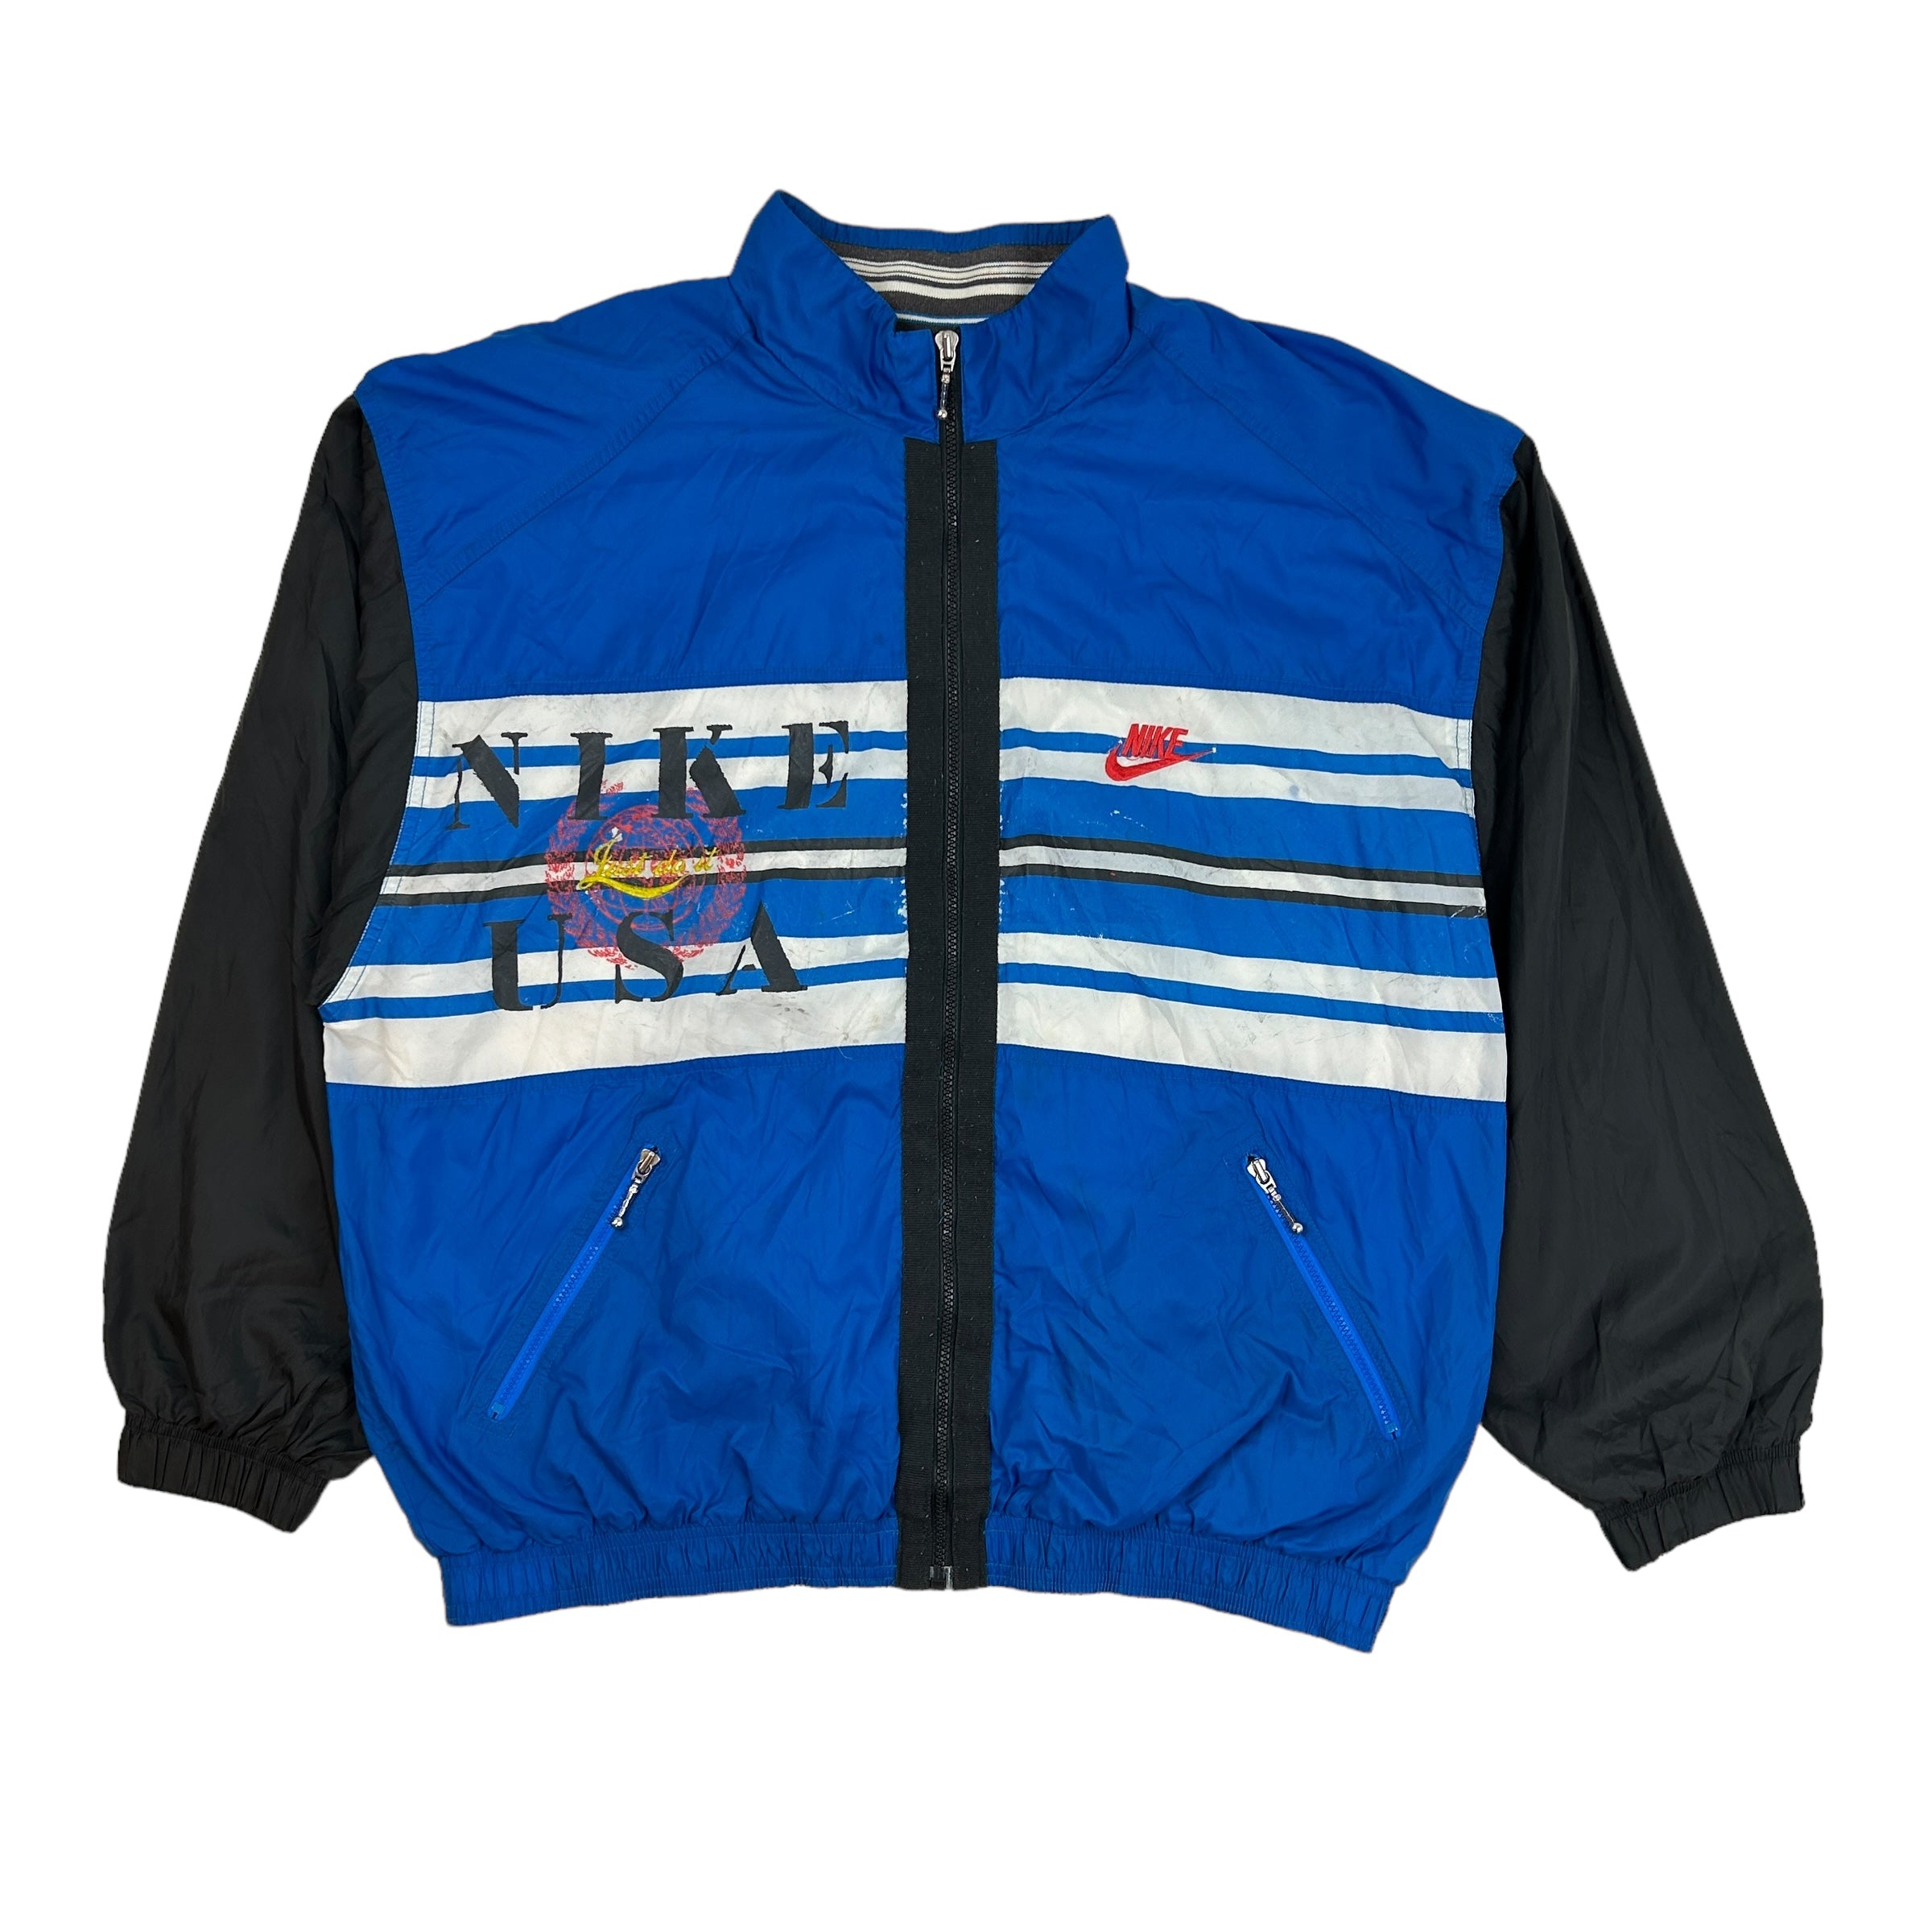 Vintage Nike USA Windbreaker Jacket Blue/Black